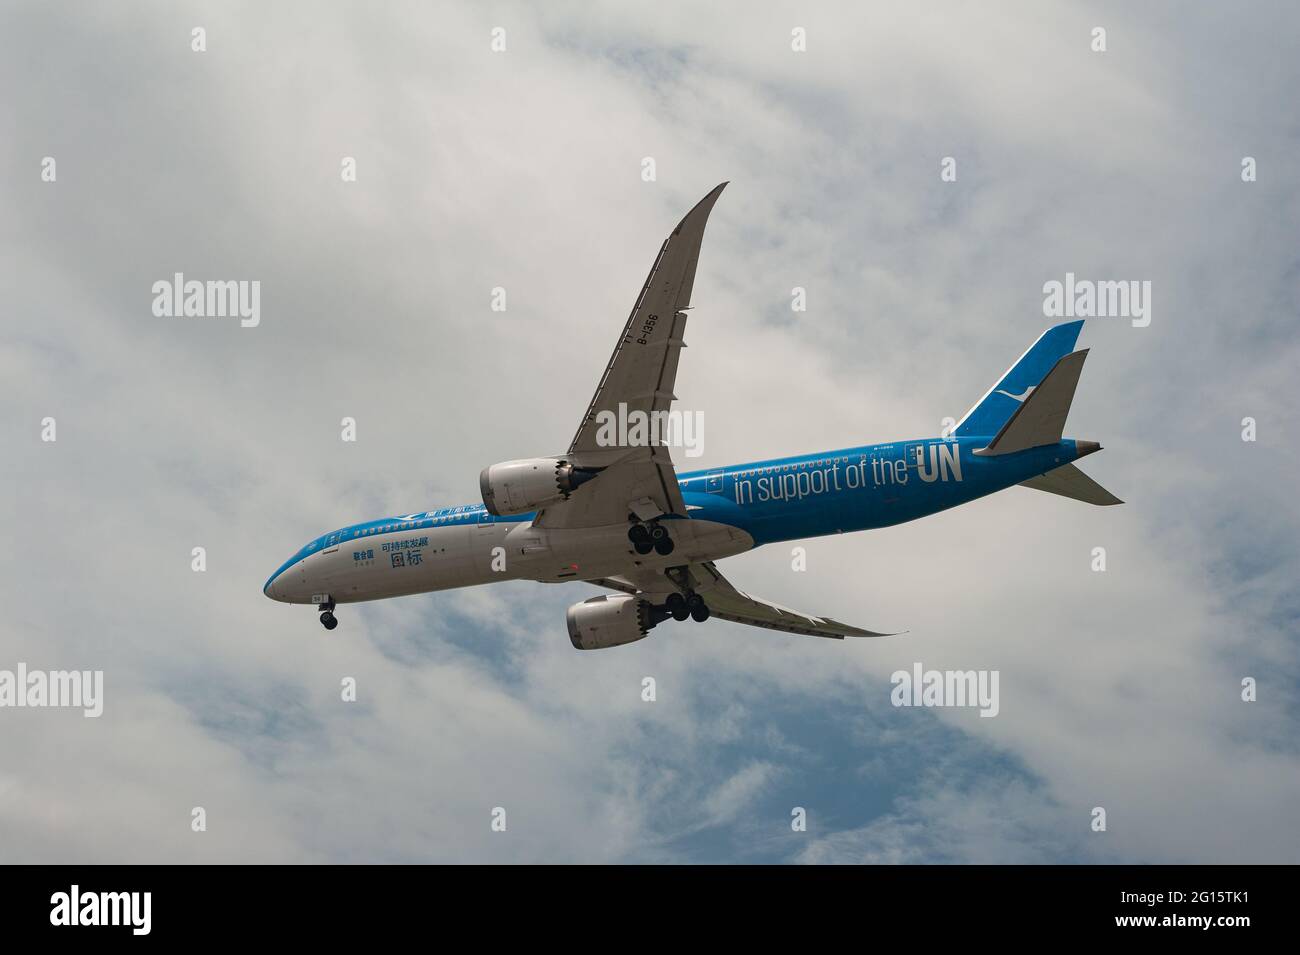 26.05.2021, Singapore, Repubblica di Singapore, Asia - Xiamen Air Boeing 787-9 Dreamliner aereo passeggeri con livrea speciale ONU atterra all'aeroporto di Changi. Foto Stock